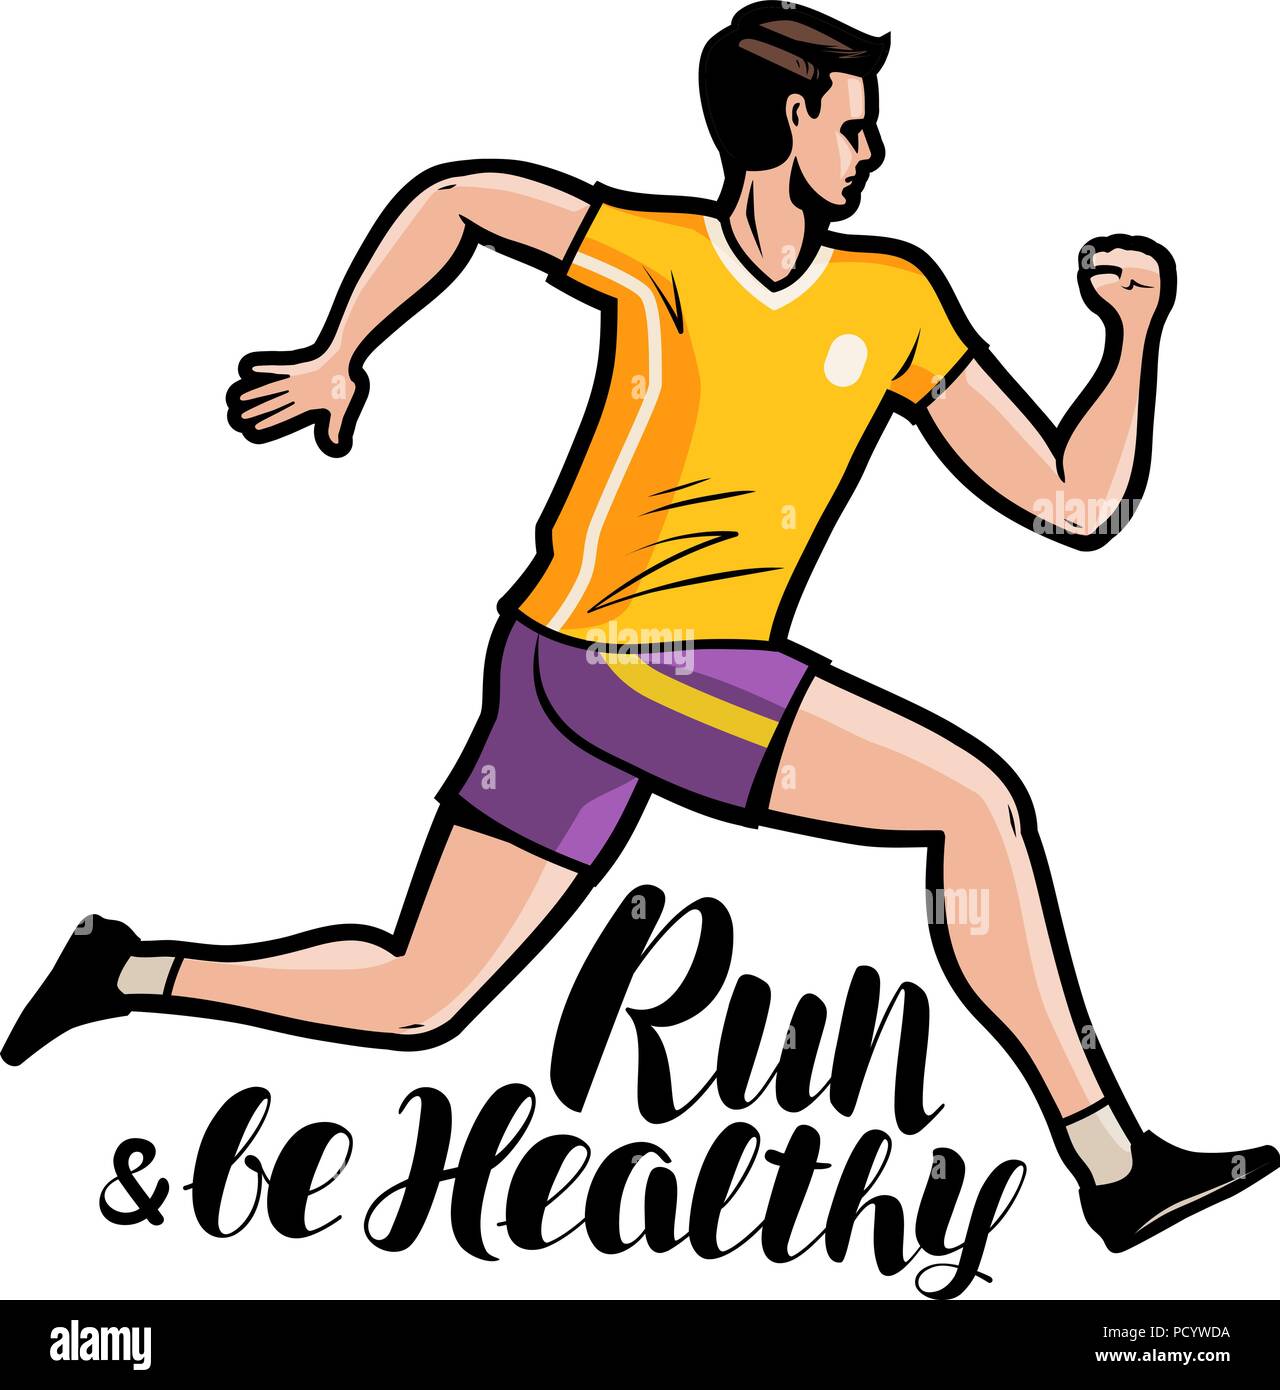 Jogging, running. Run and be healthy, lettering. Cartoon vector illustration Stock Vector